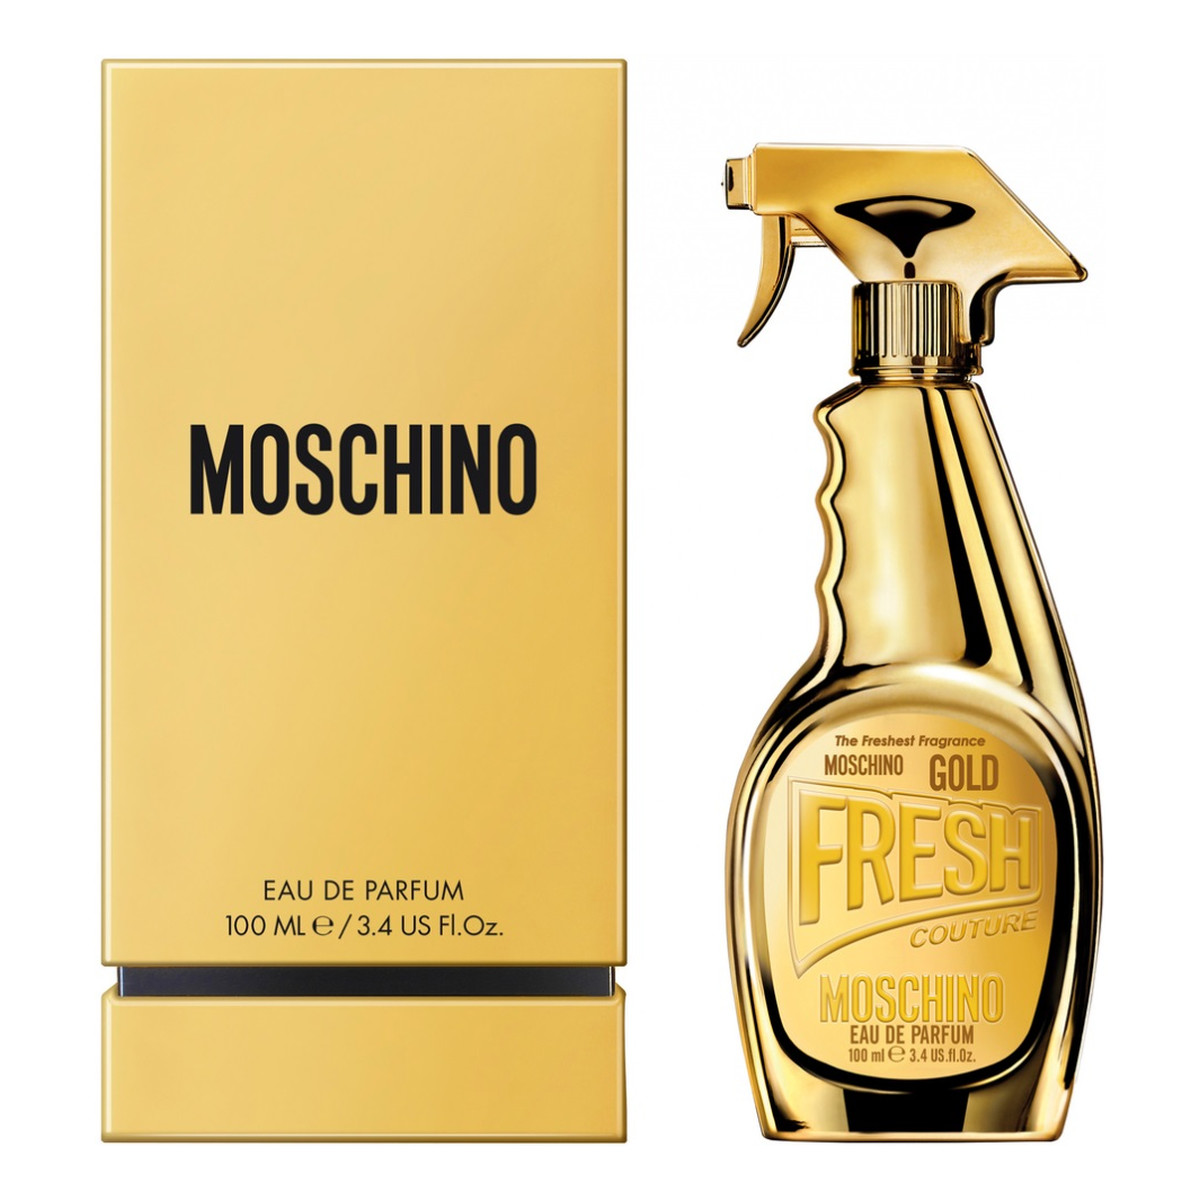 Moschino Gold Fresh Couture Woda perfumowana spray 100ml